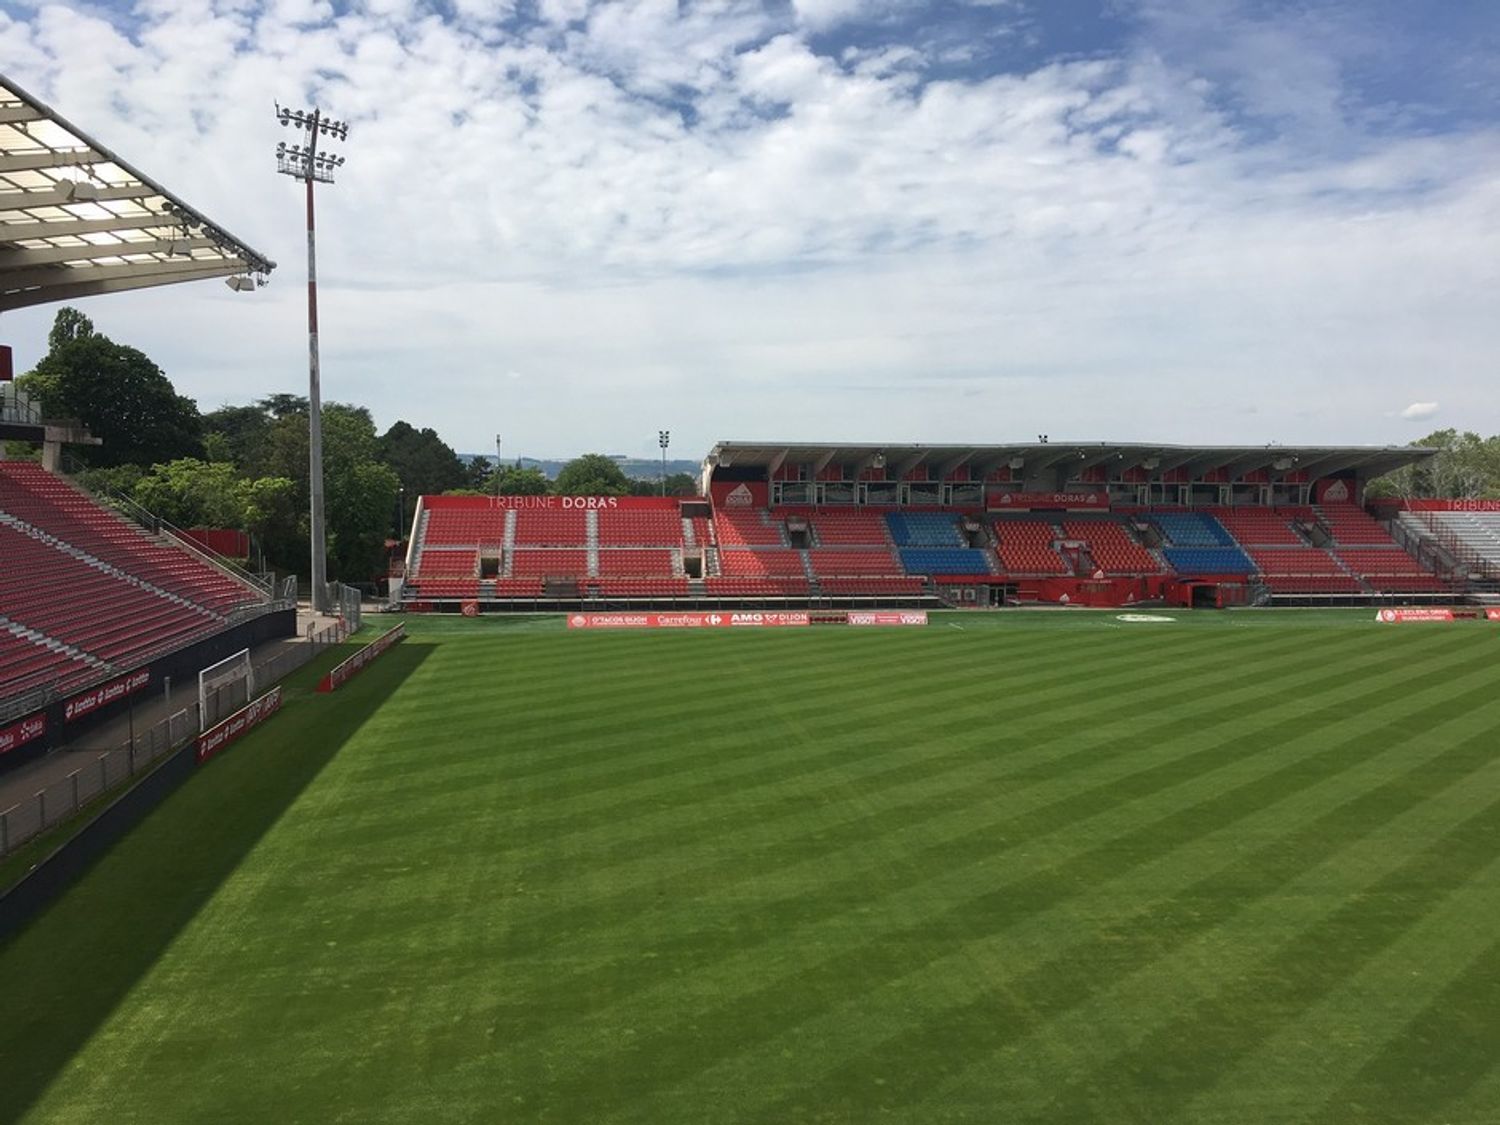 Le stade Gaston-Gérard accueillera la finale de la Coupe de France féminine